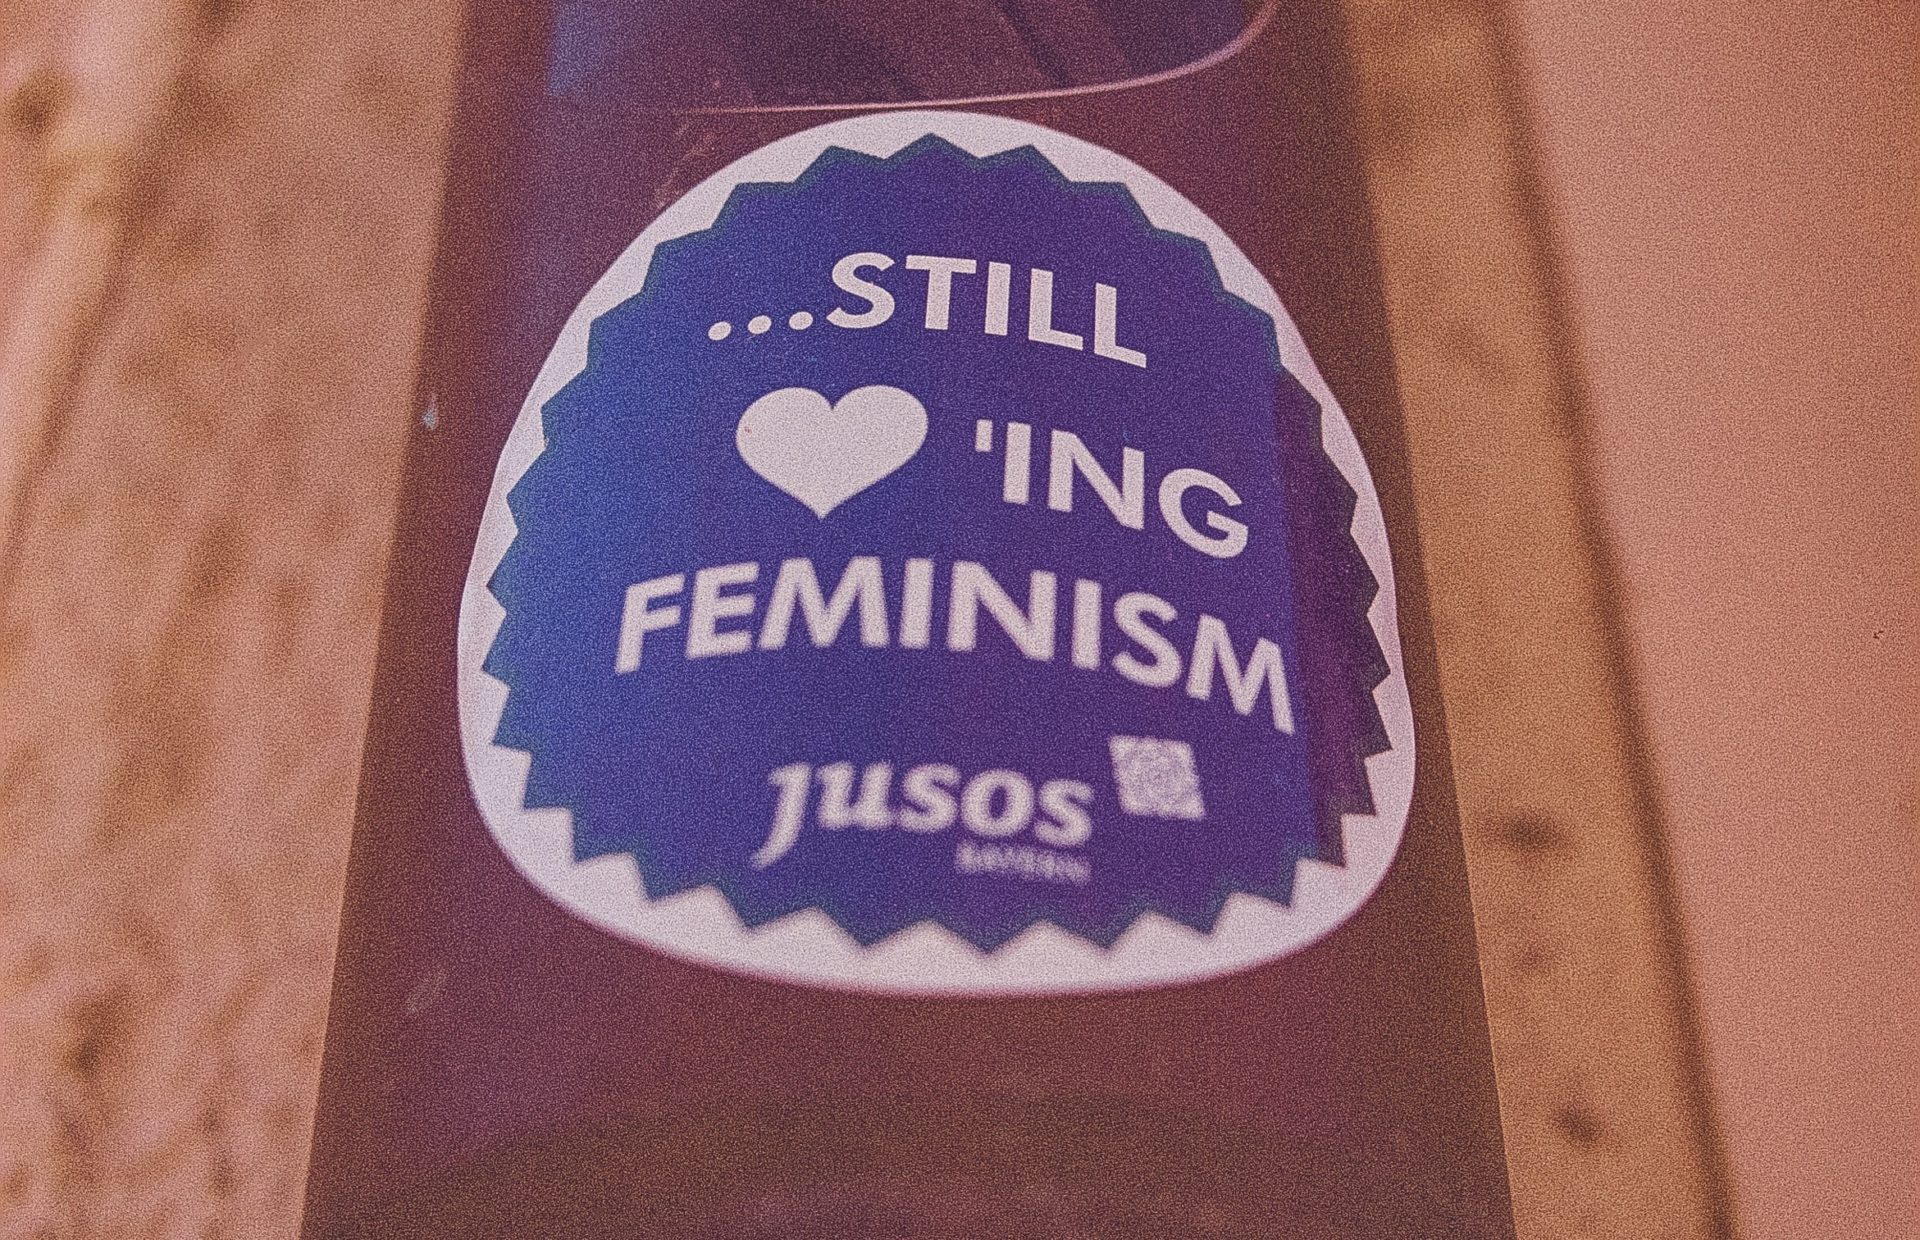 Still loving feminism